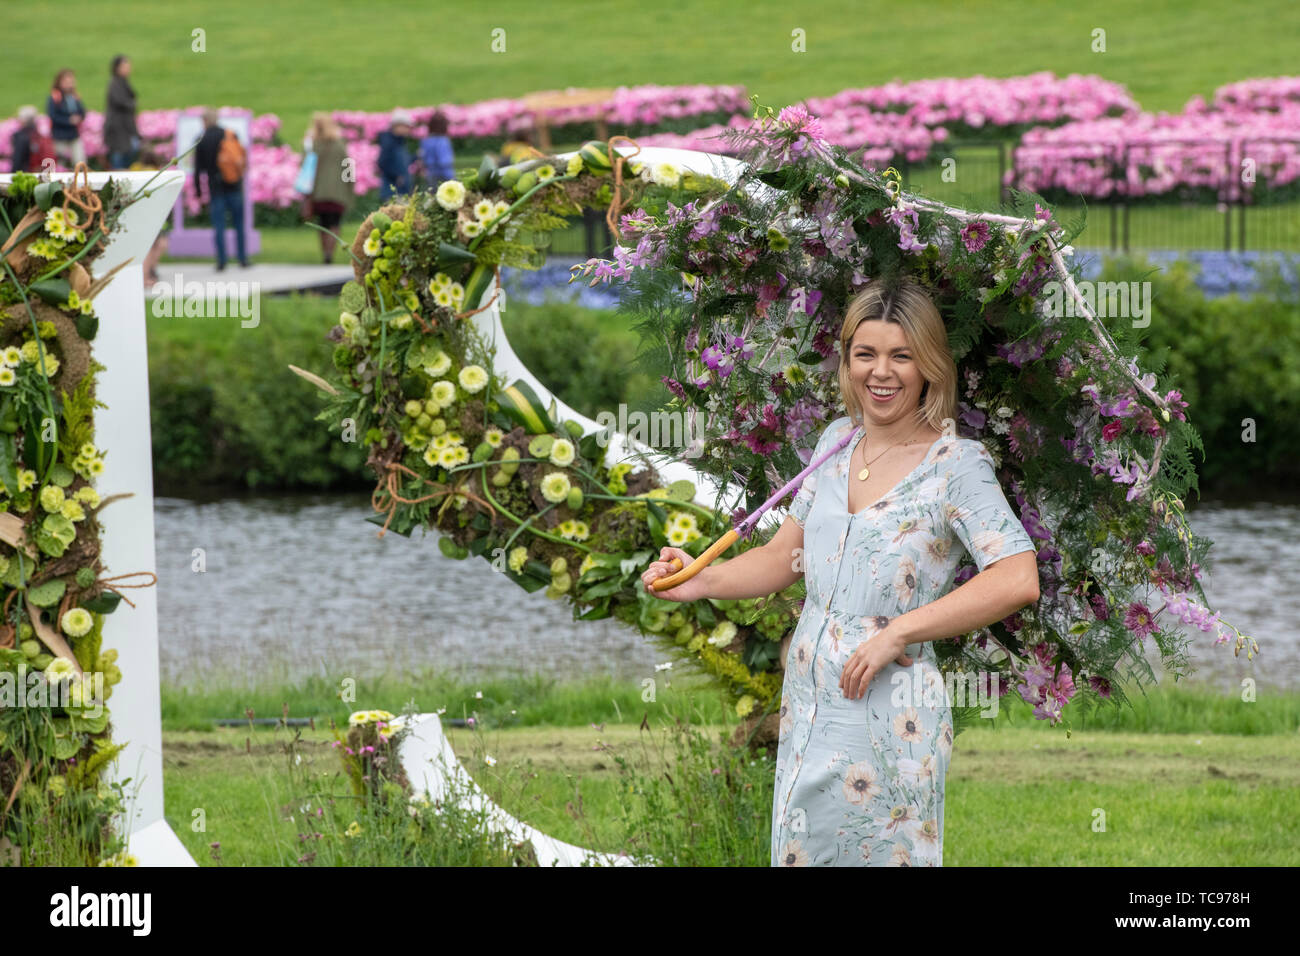 Femme avec un parasol à Chatsworth RHS Flower Show 2019. Chatsworth, Bakewell, Derbyshire, Royaume-Uni Banque D'Images